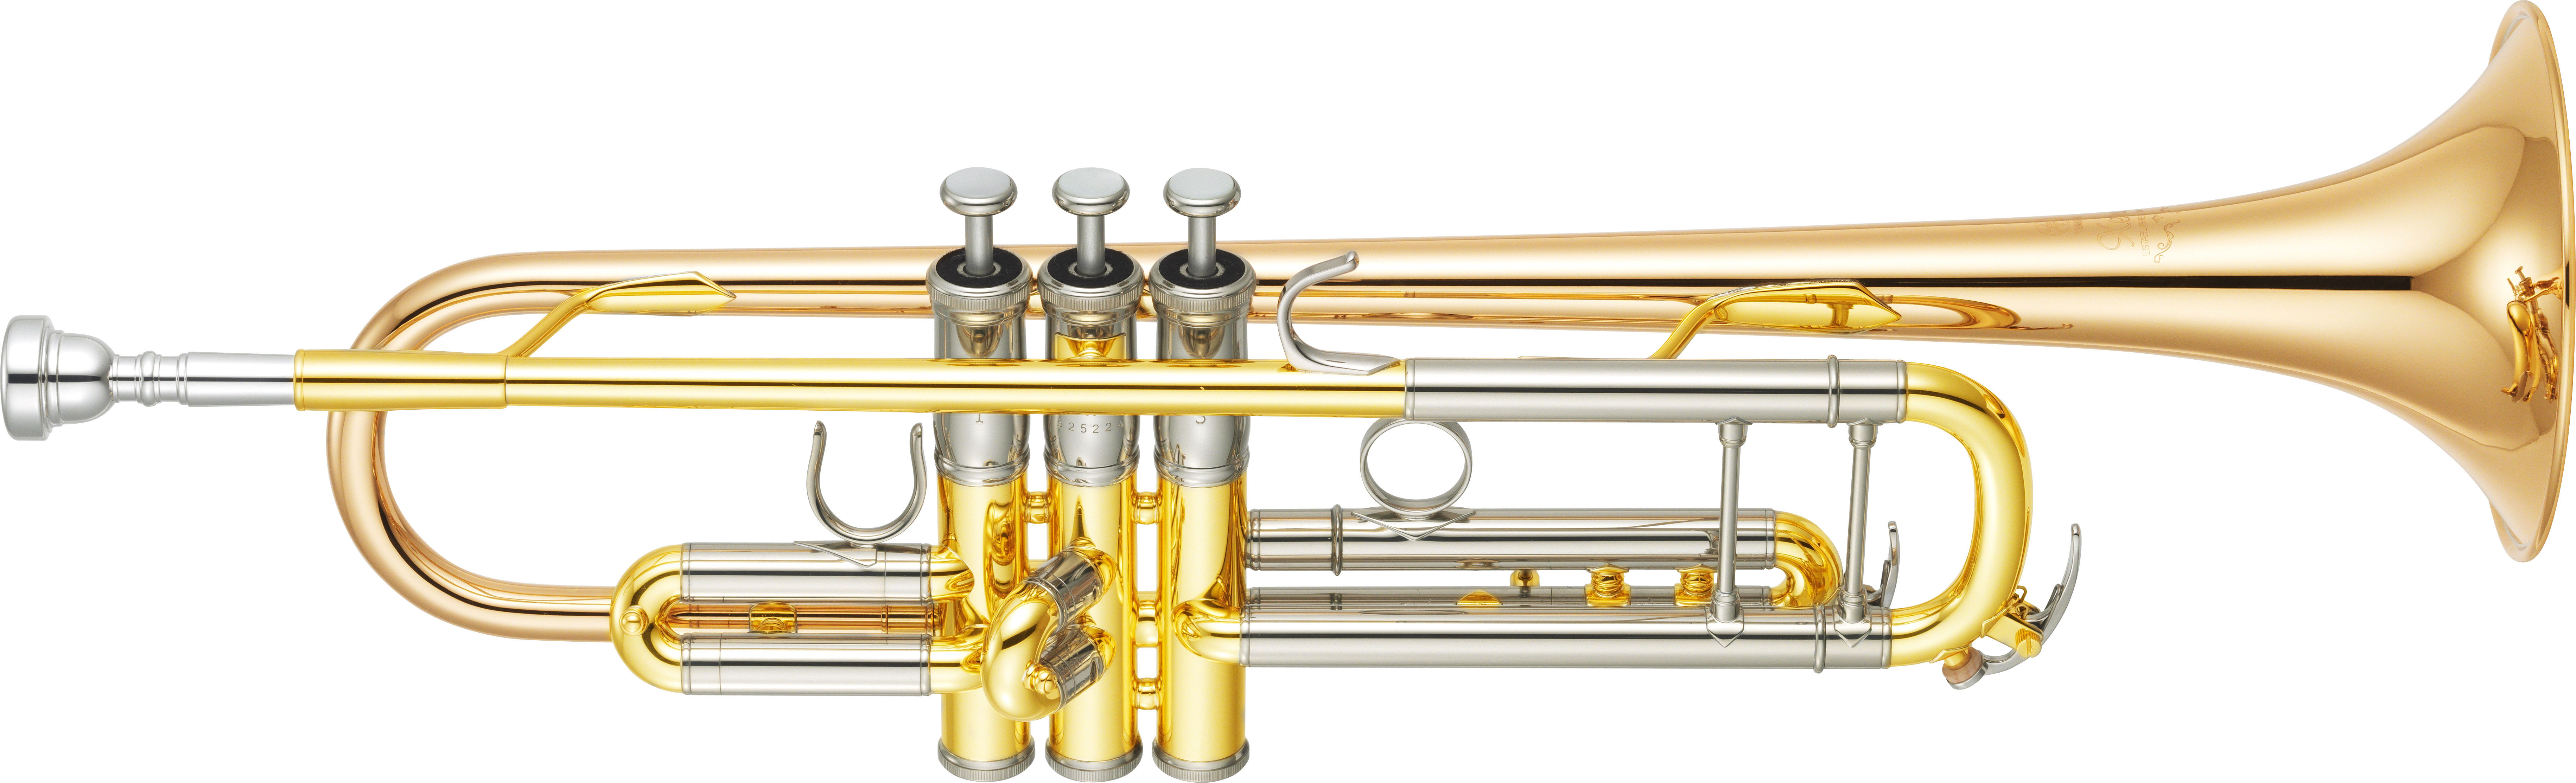 Yamaha Bb Trumpet - YTR 8345 G 04